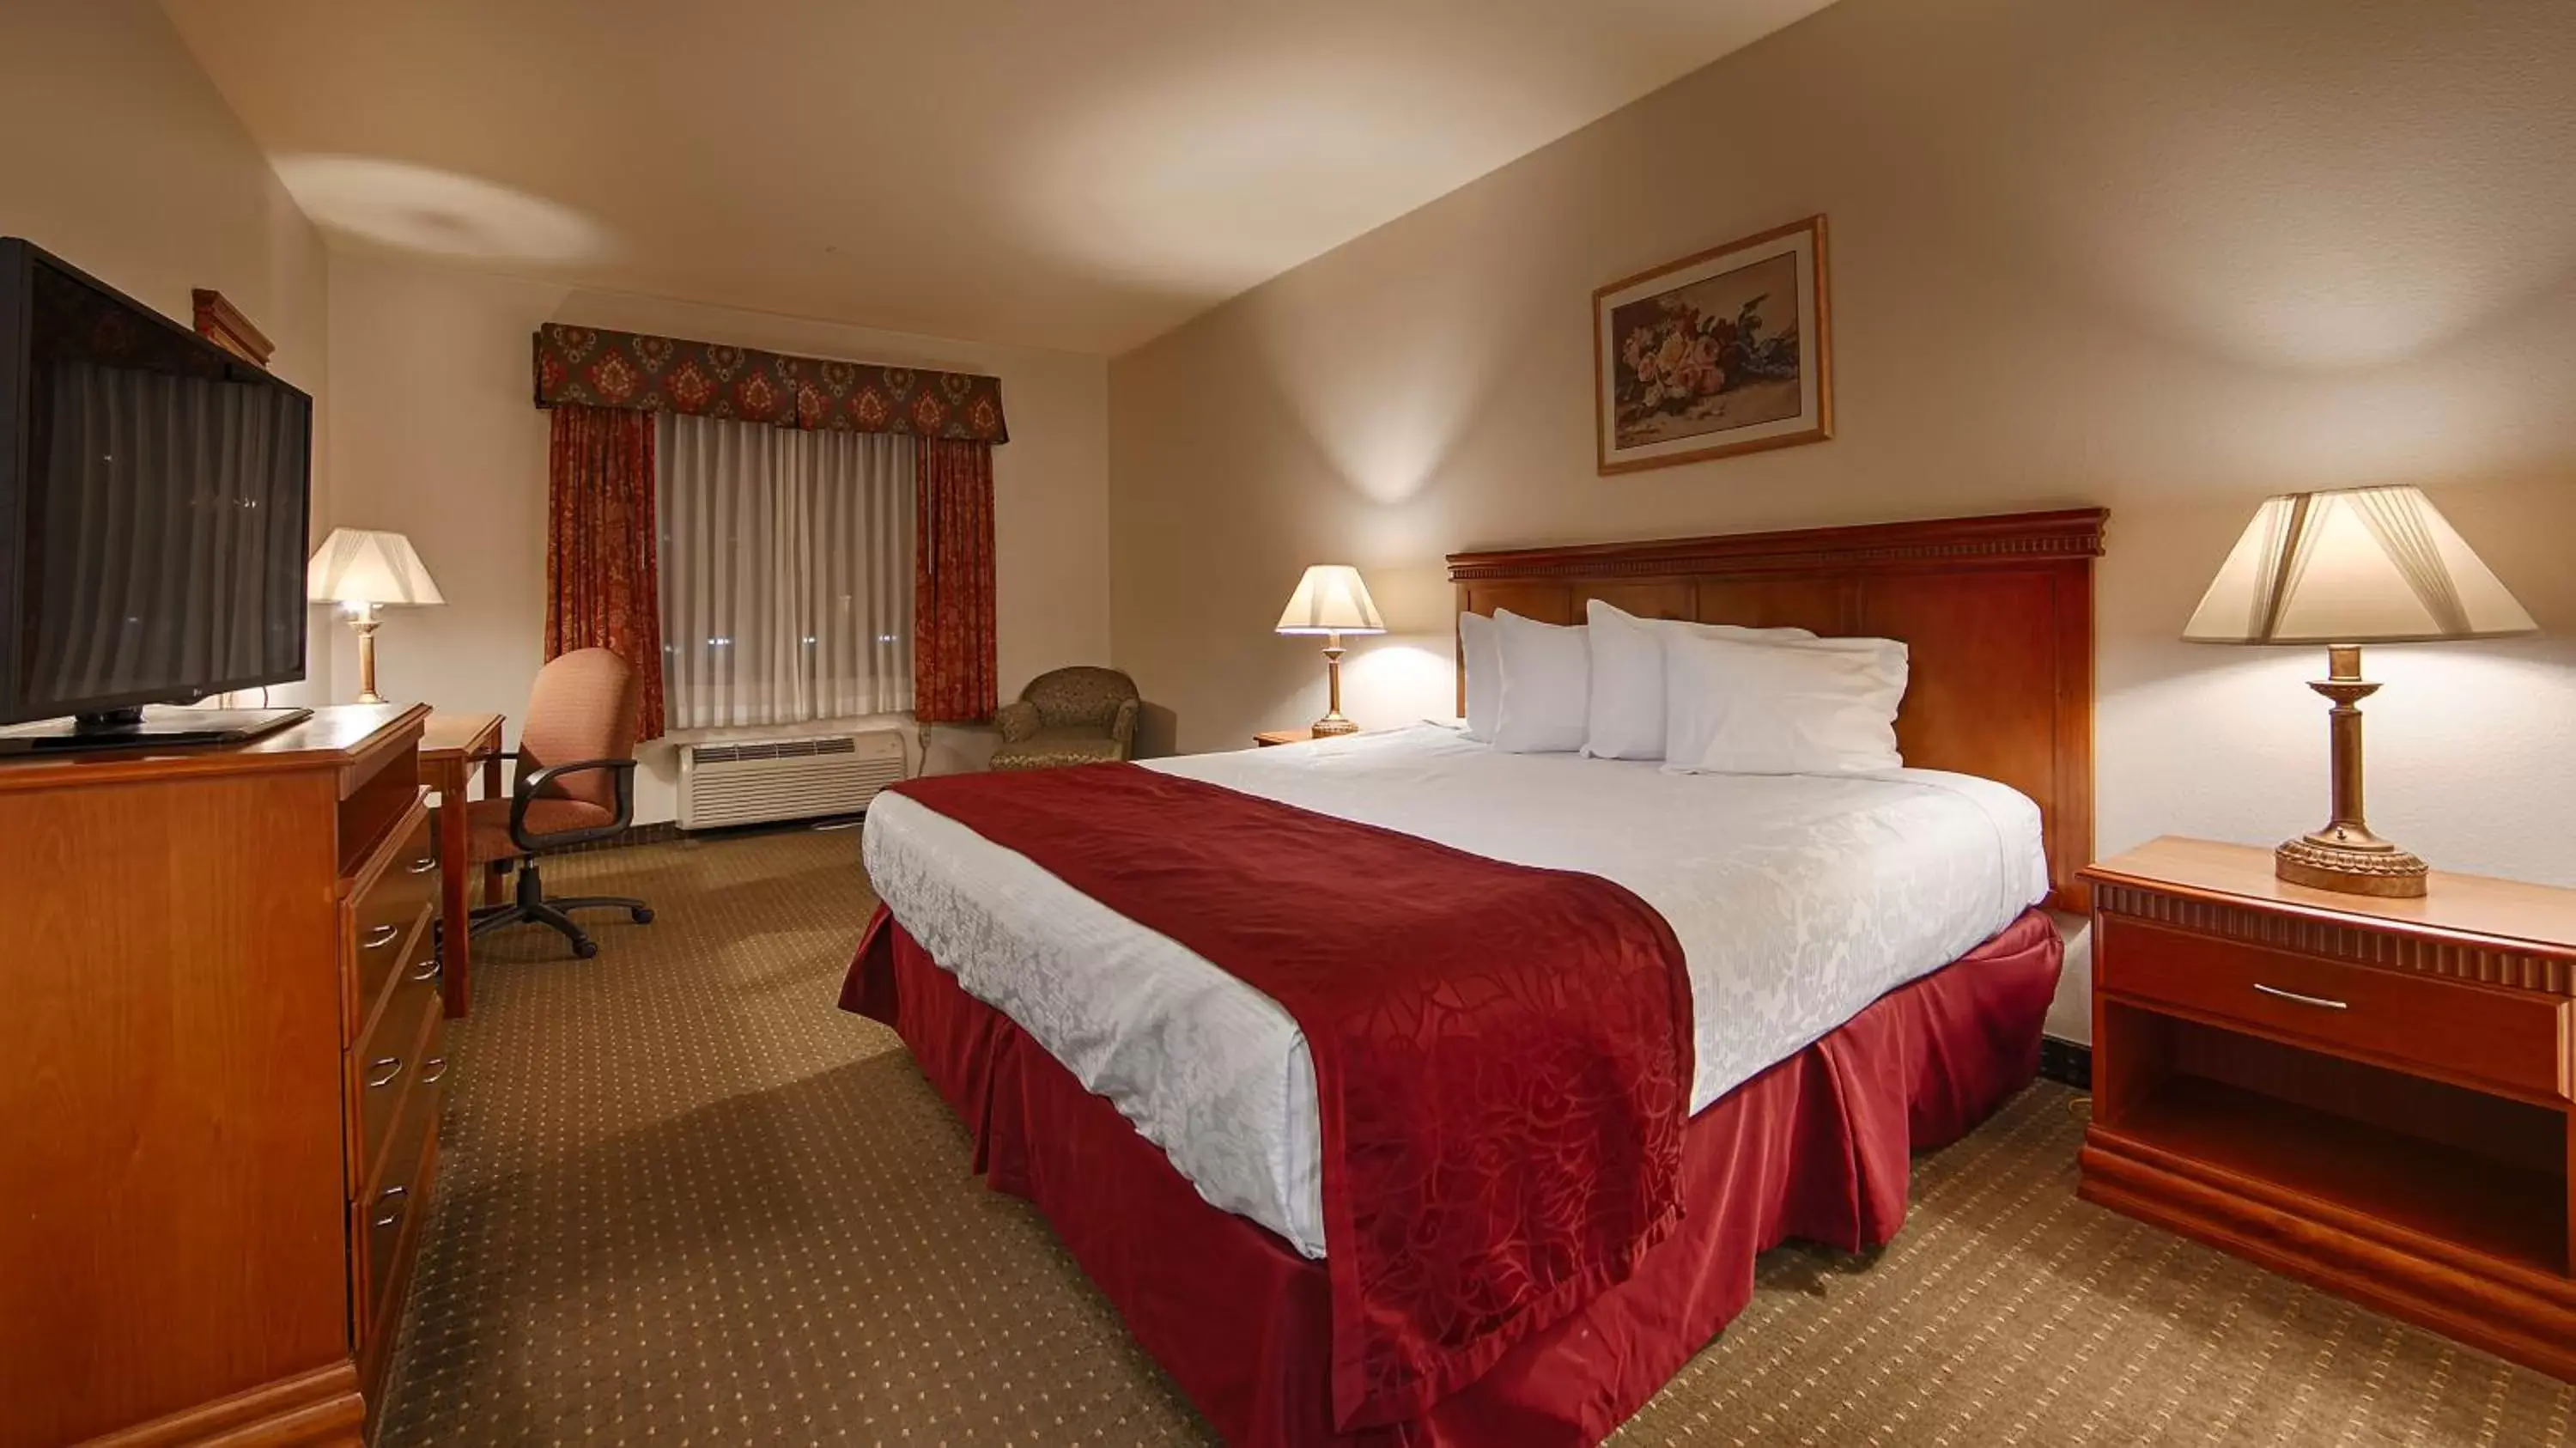 Bedroom, Bed in Best Western Plus Lake Elsinore Inn & Suites